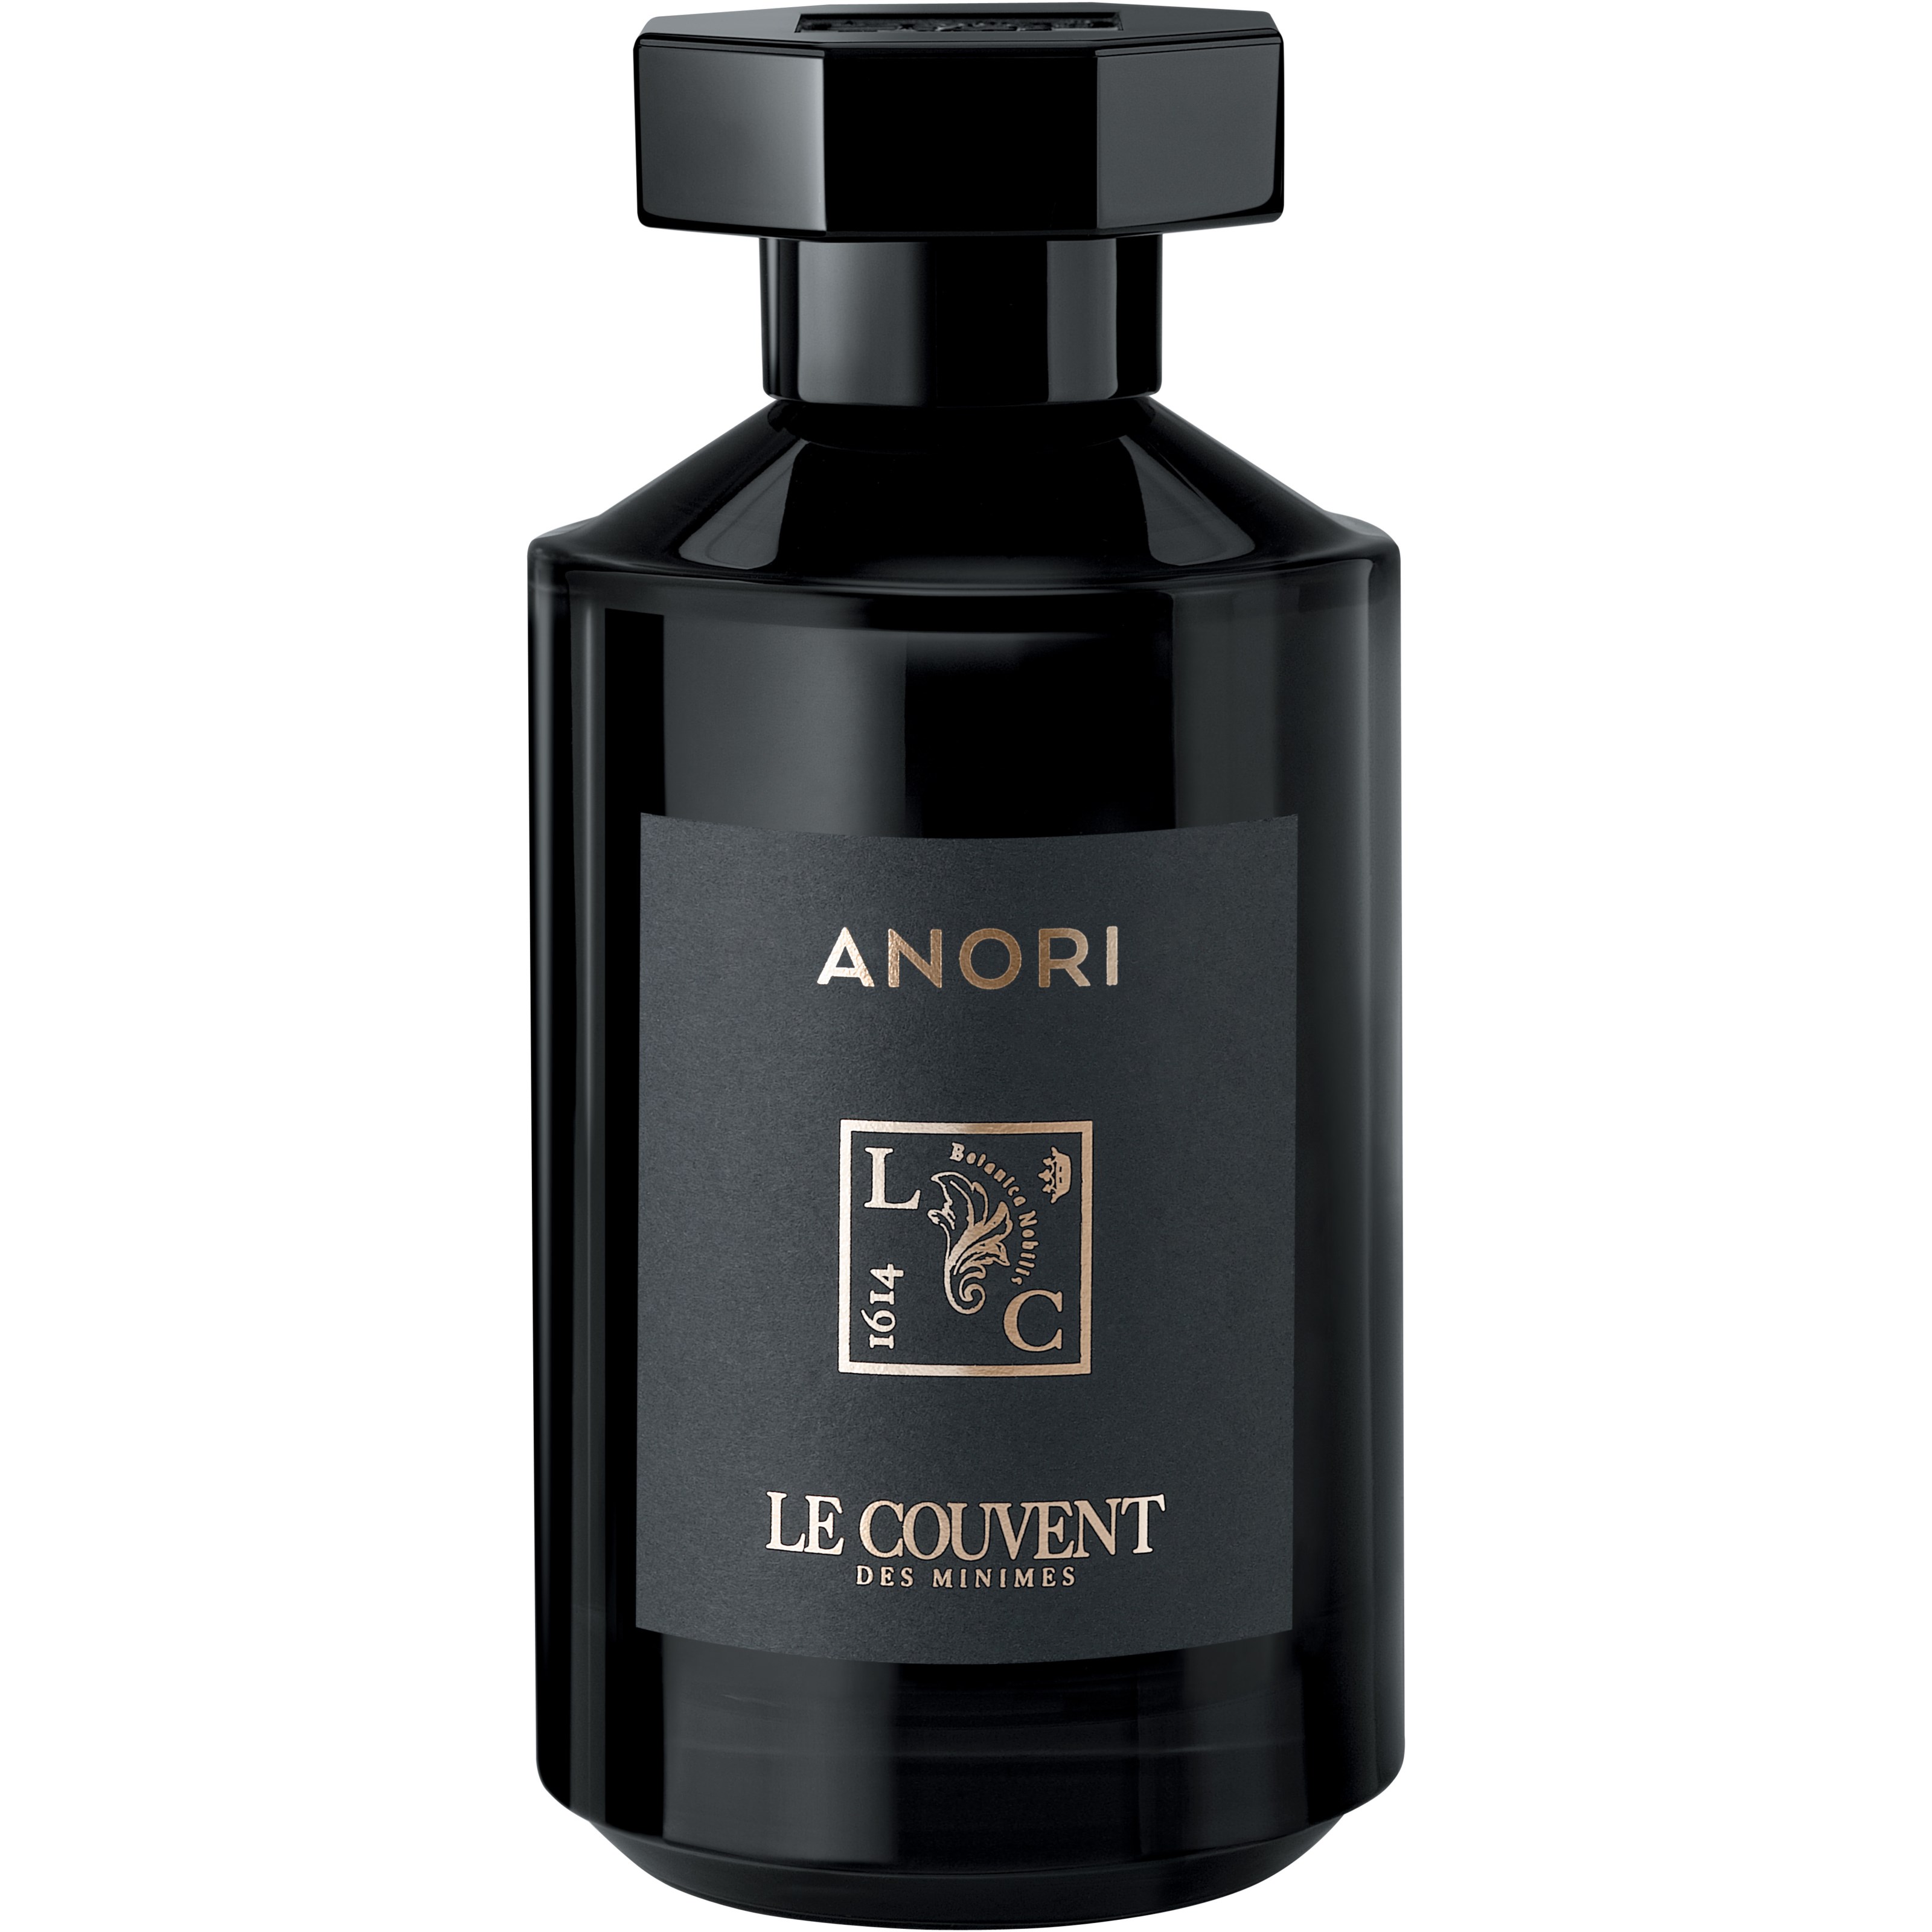 Läs mer om Le Couvent Anori Remarkable Perfumes Eau de Parfum 100 ml